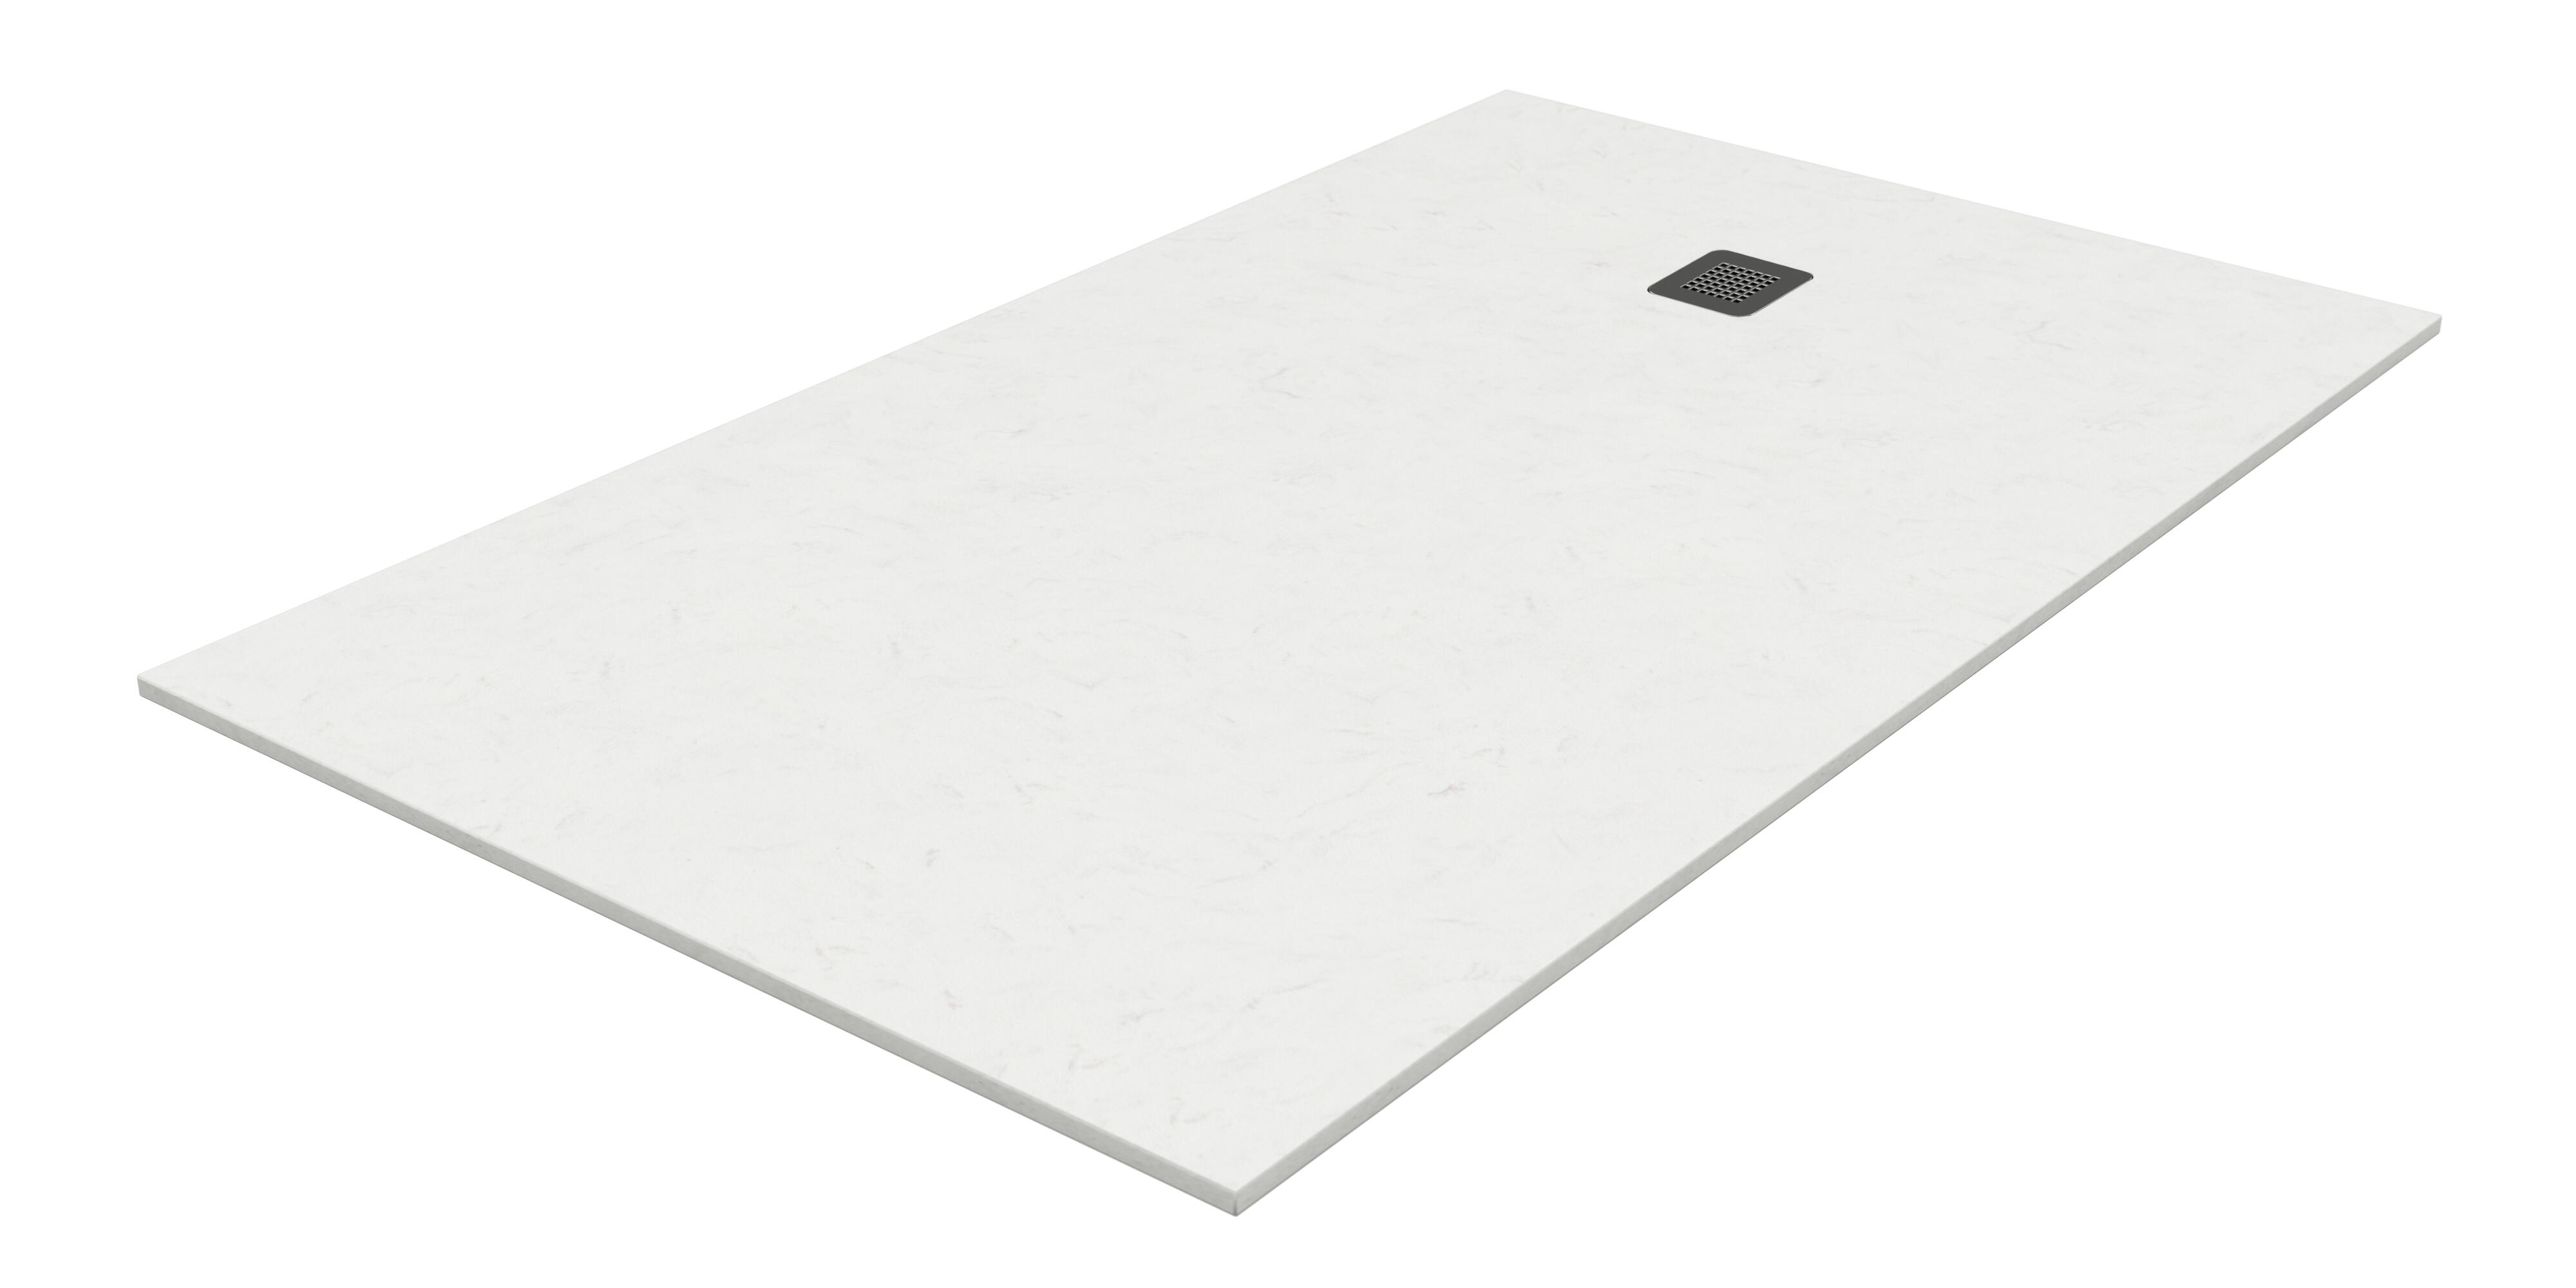 Plato de ducha kioto 100x70 cm blanco